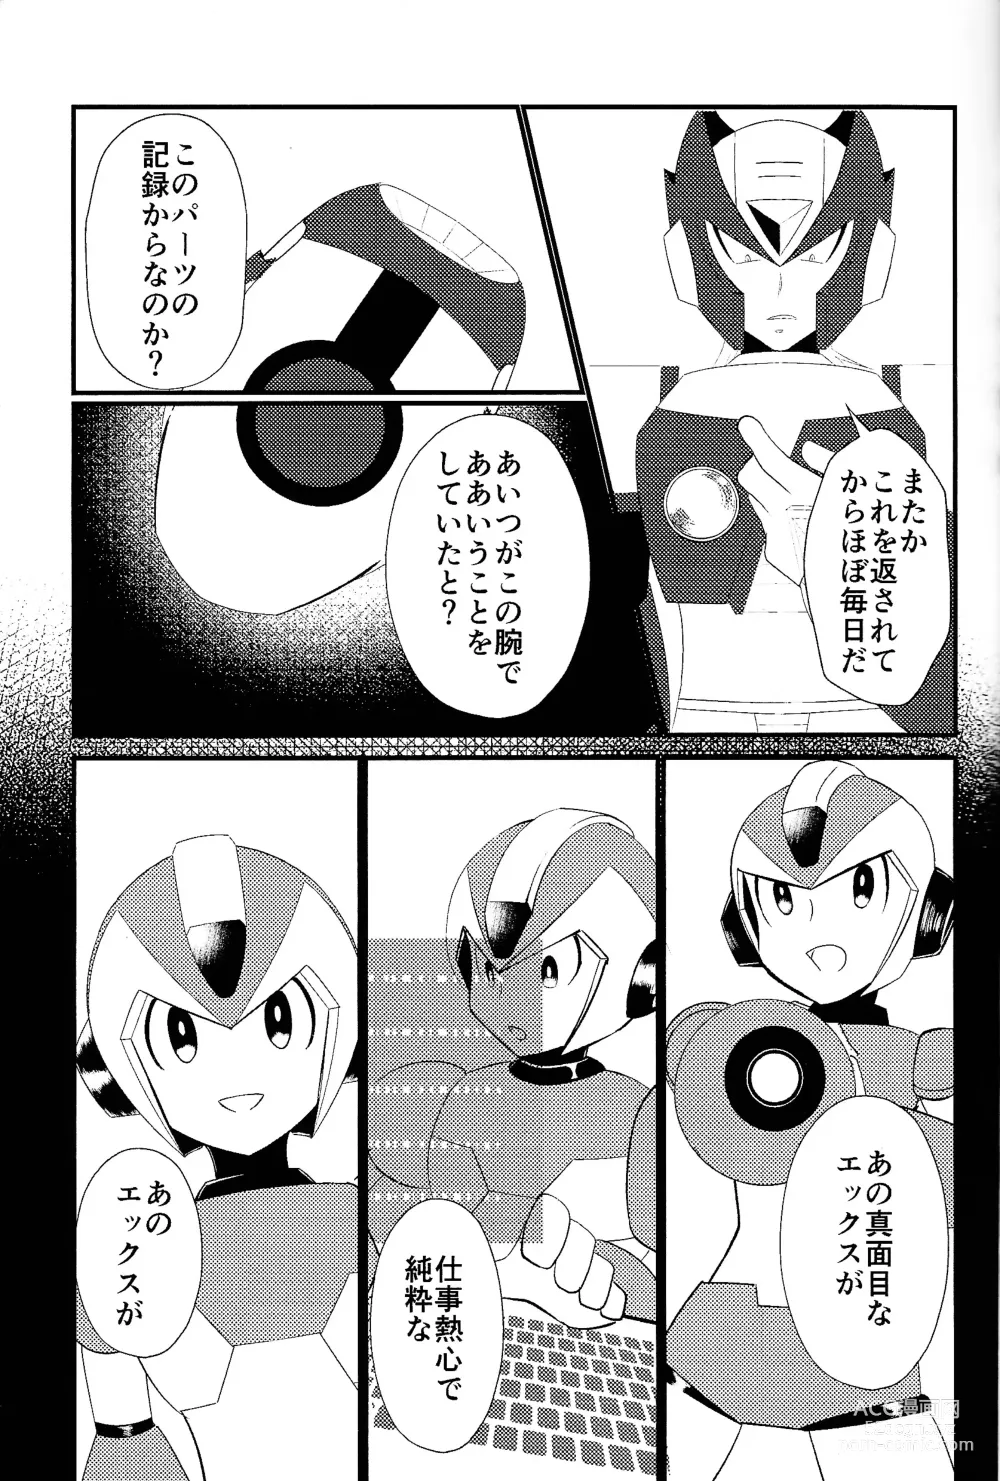 Page 5 of doujinshi Ore wa kimi no te de Hna koto o shite shimatta!!!